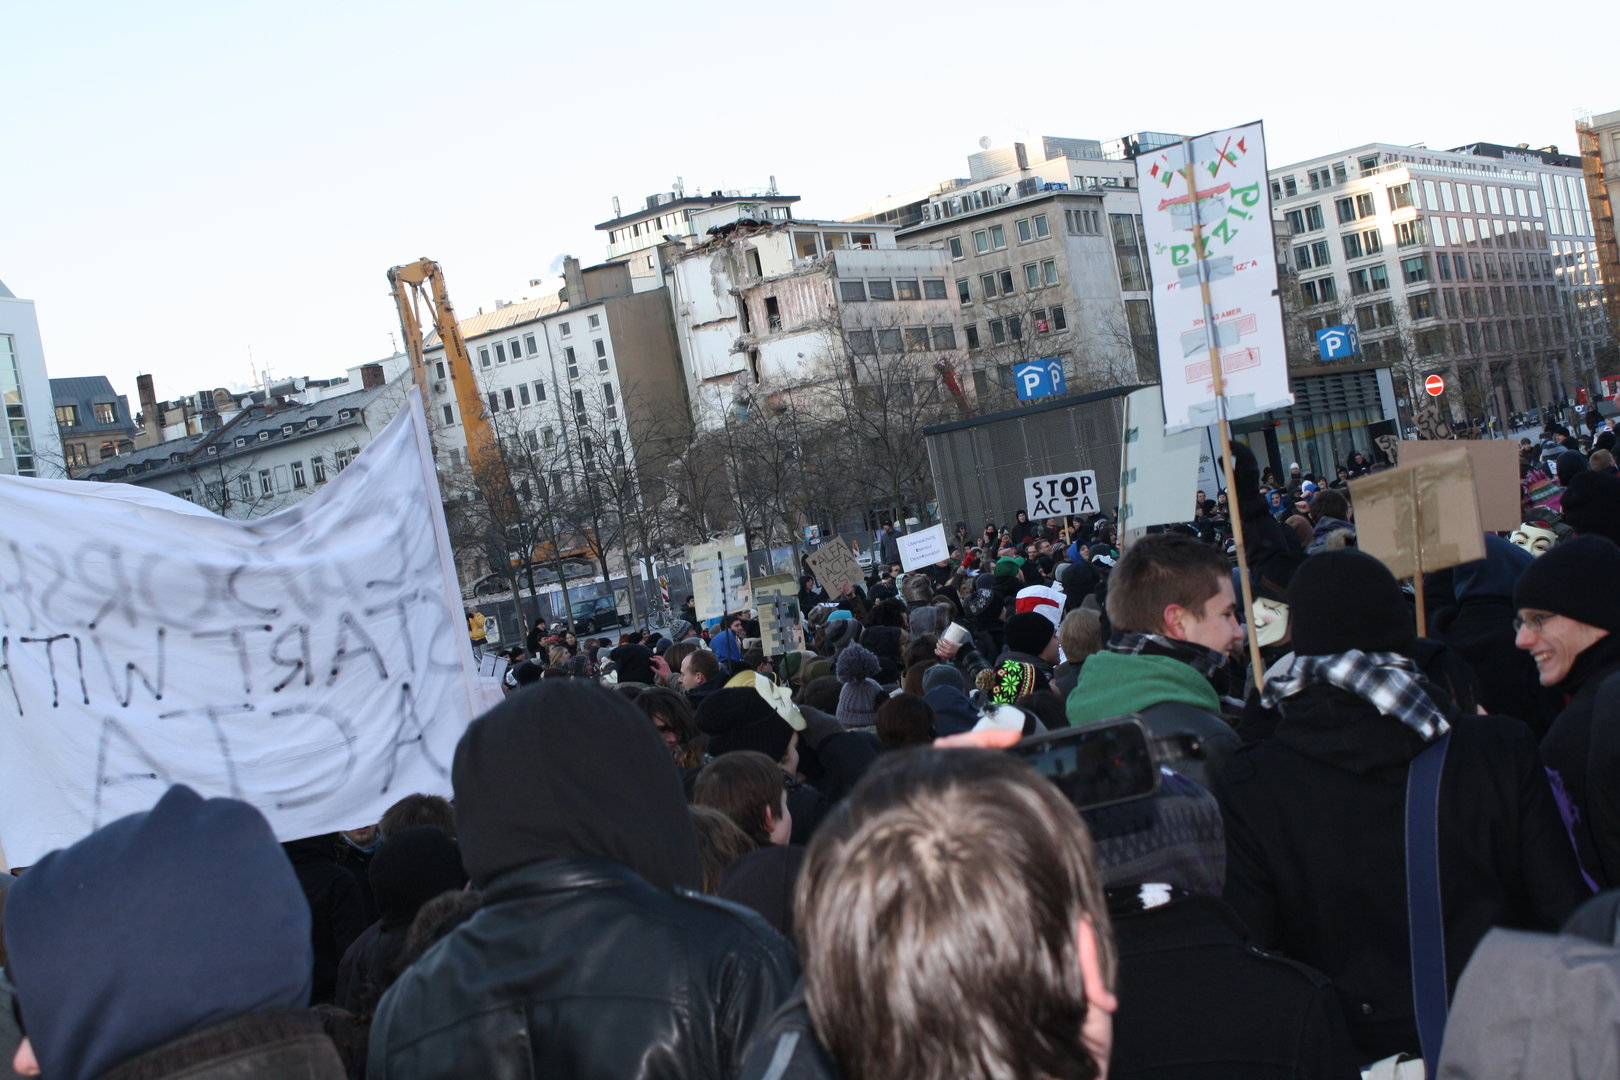 Impressionen der Demonstration in Frankfurt a.M.